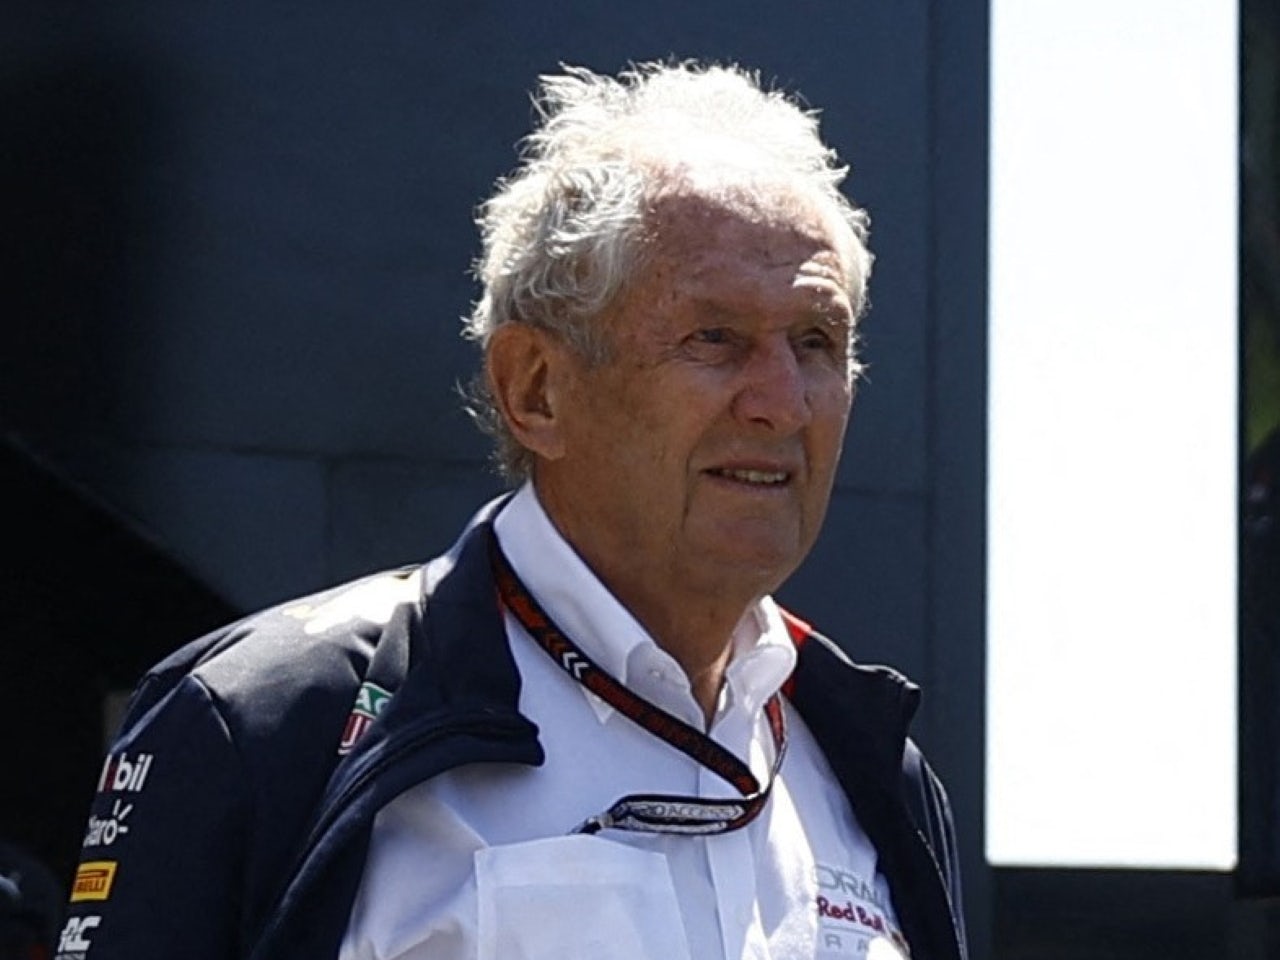 Marko expects Newey's move to Ferrari amid Red Bull turmoil